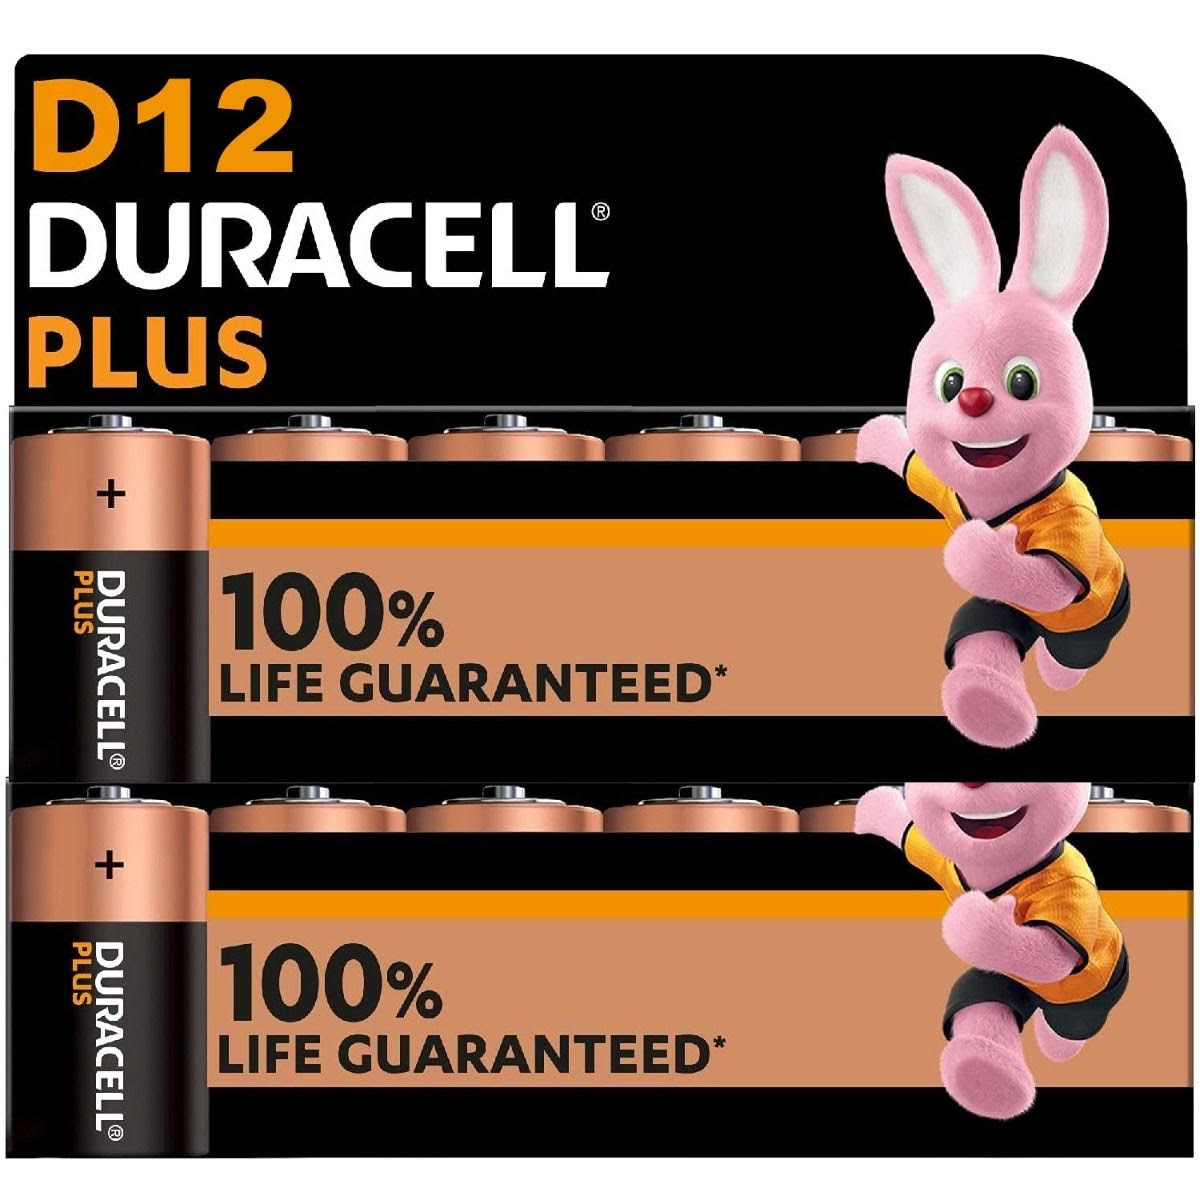 Duracell Plus LR20 Pile LR20 (D) alcaline(s) 1.5 V 4 pc(s)